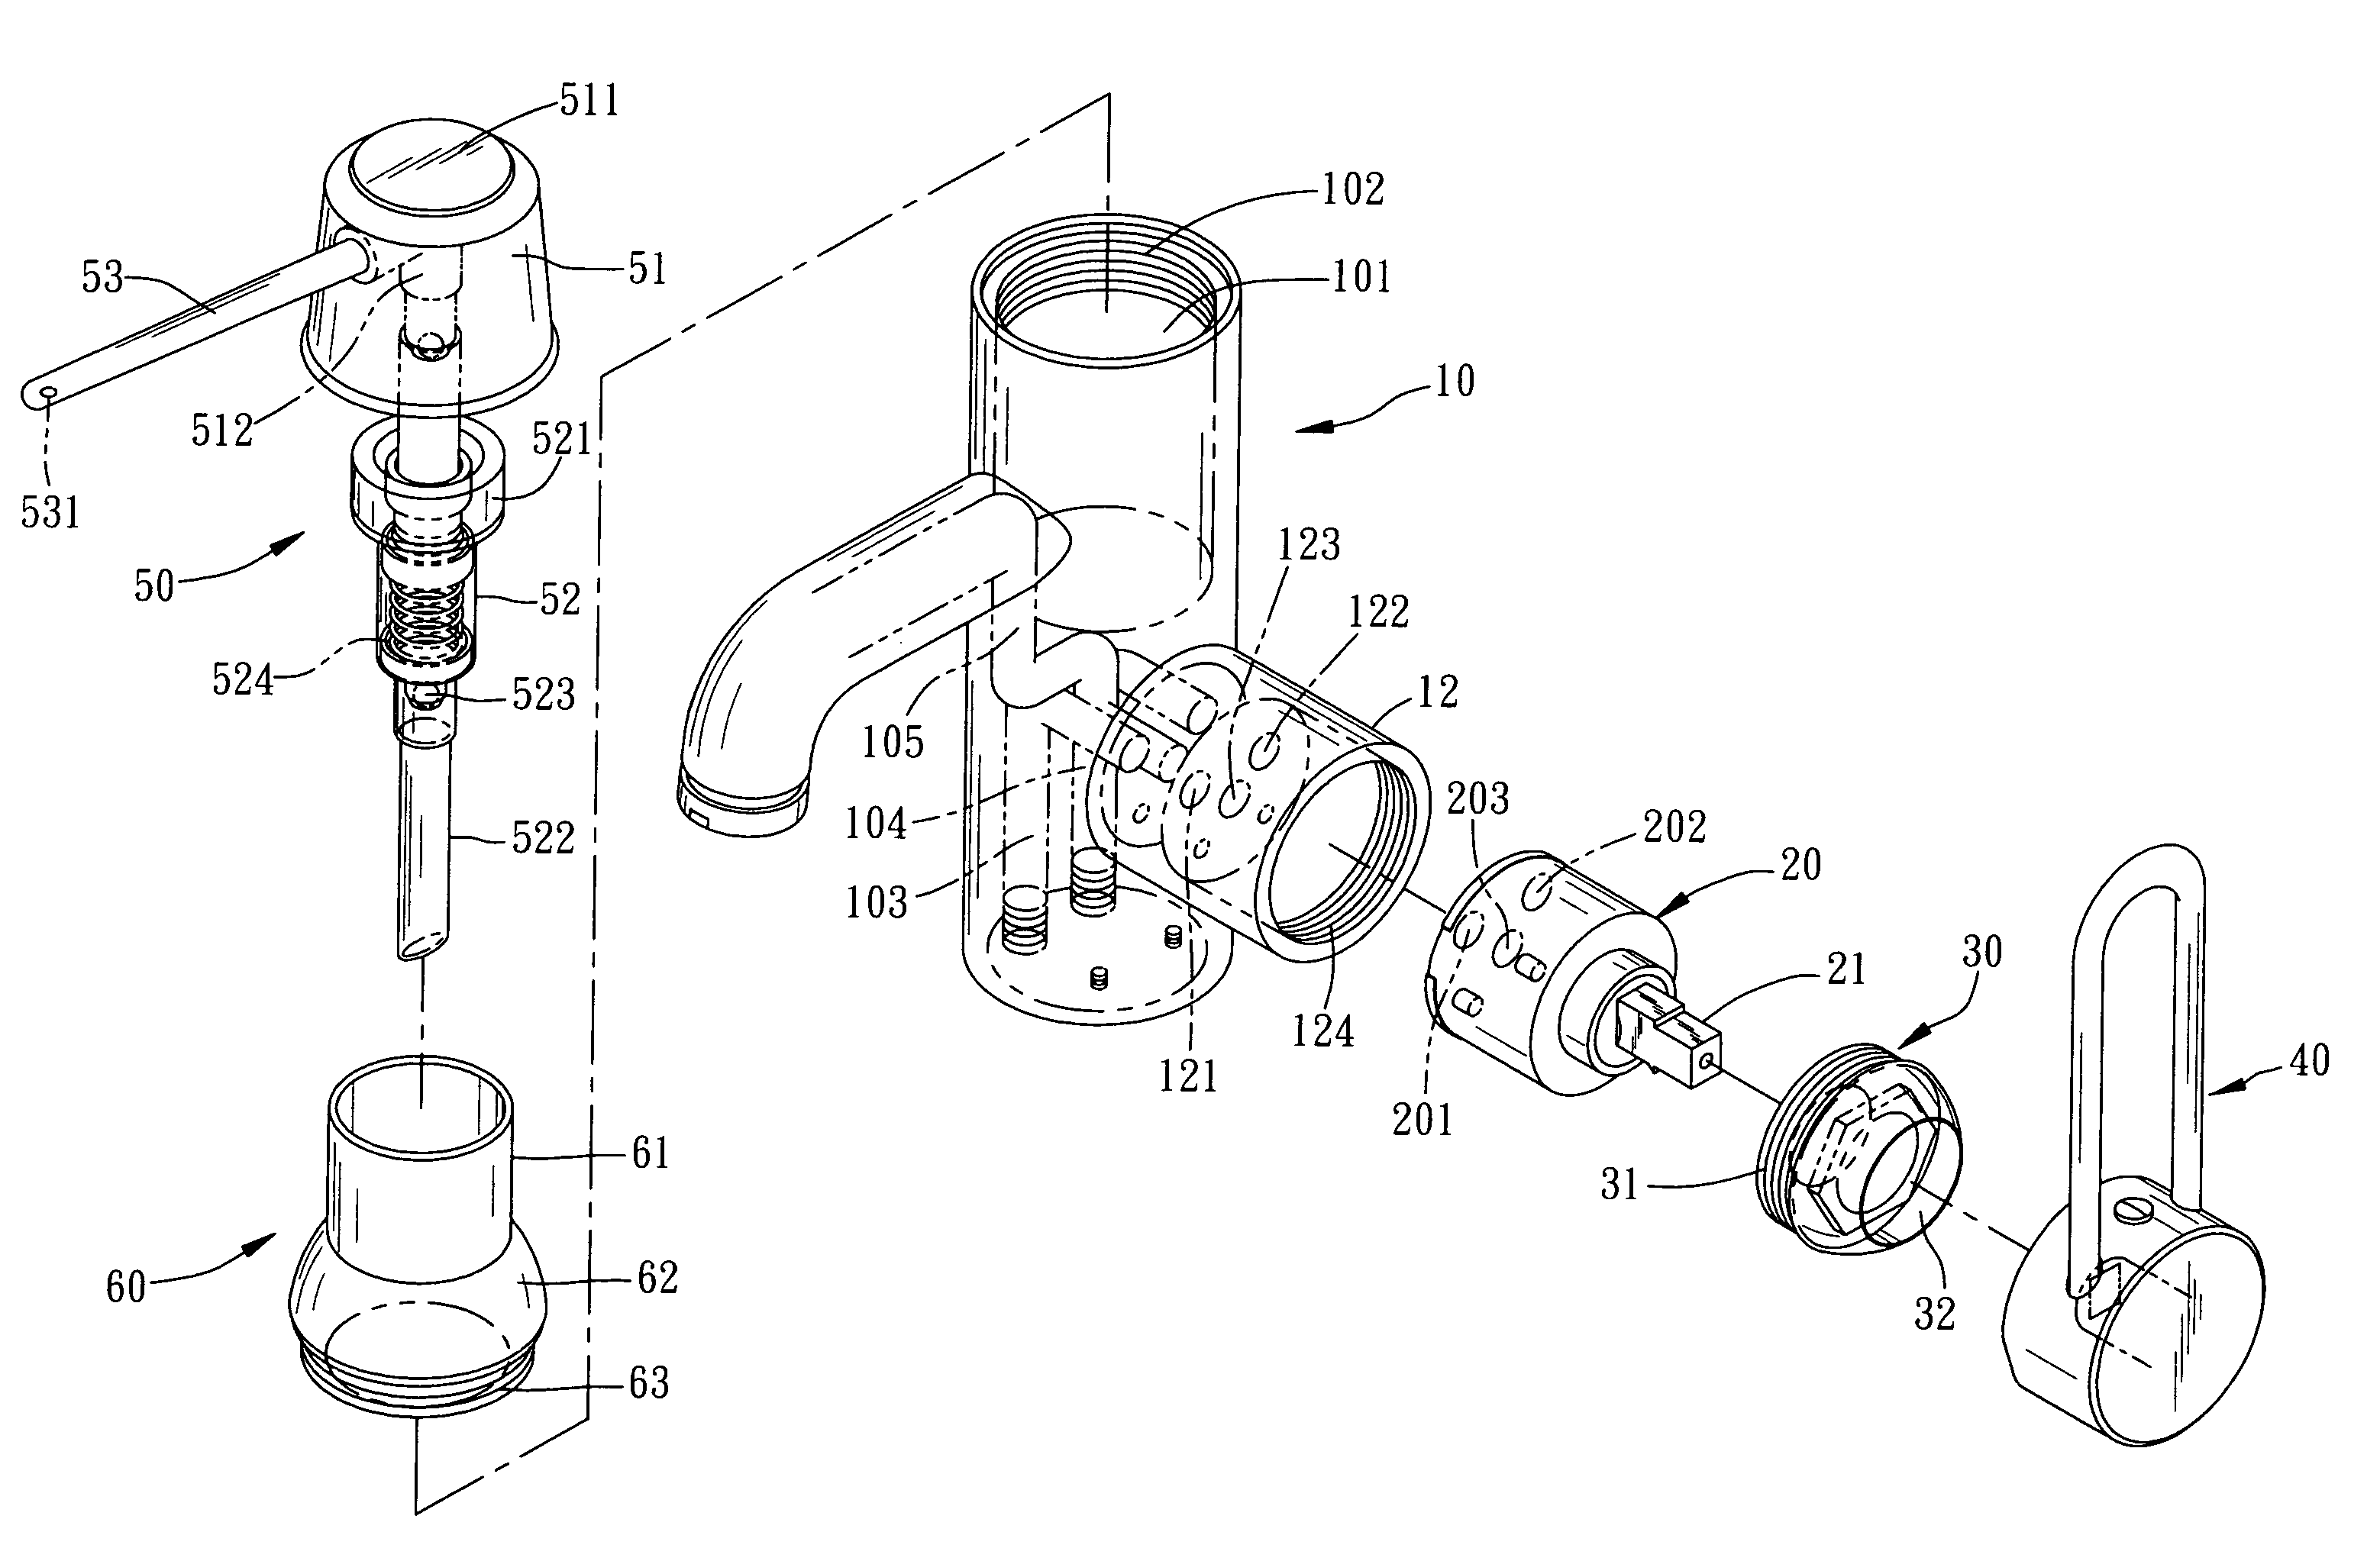 Soap-dispensing faucet structure